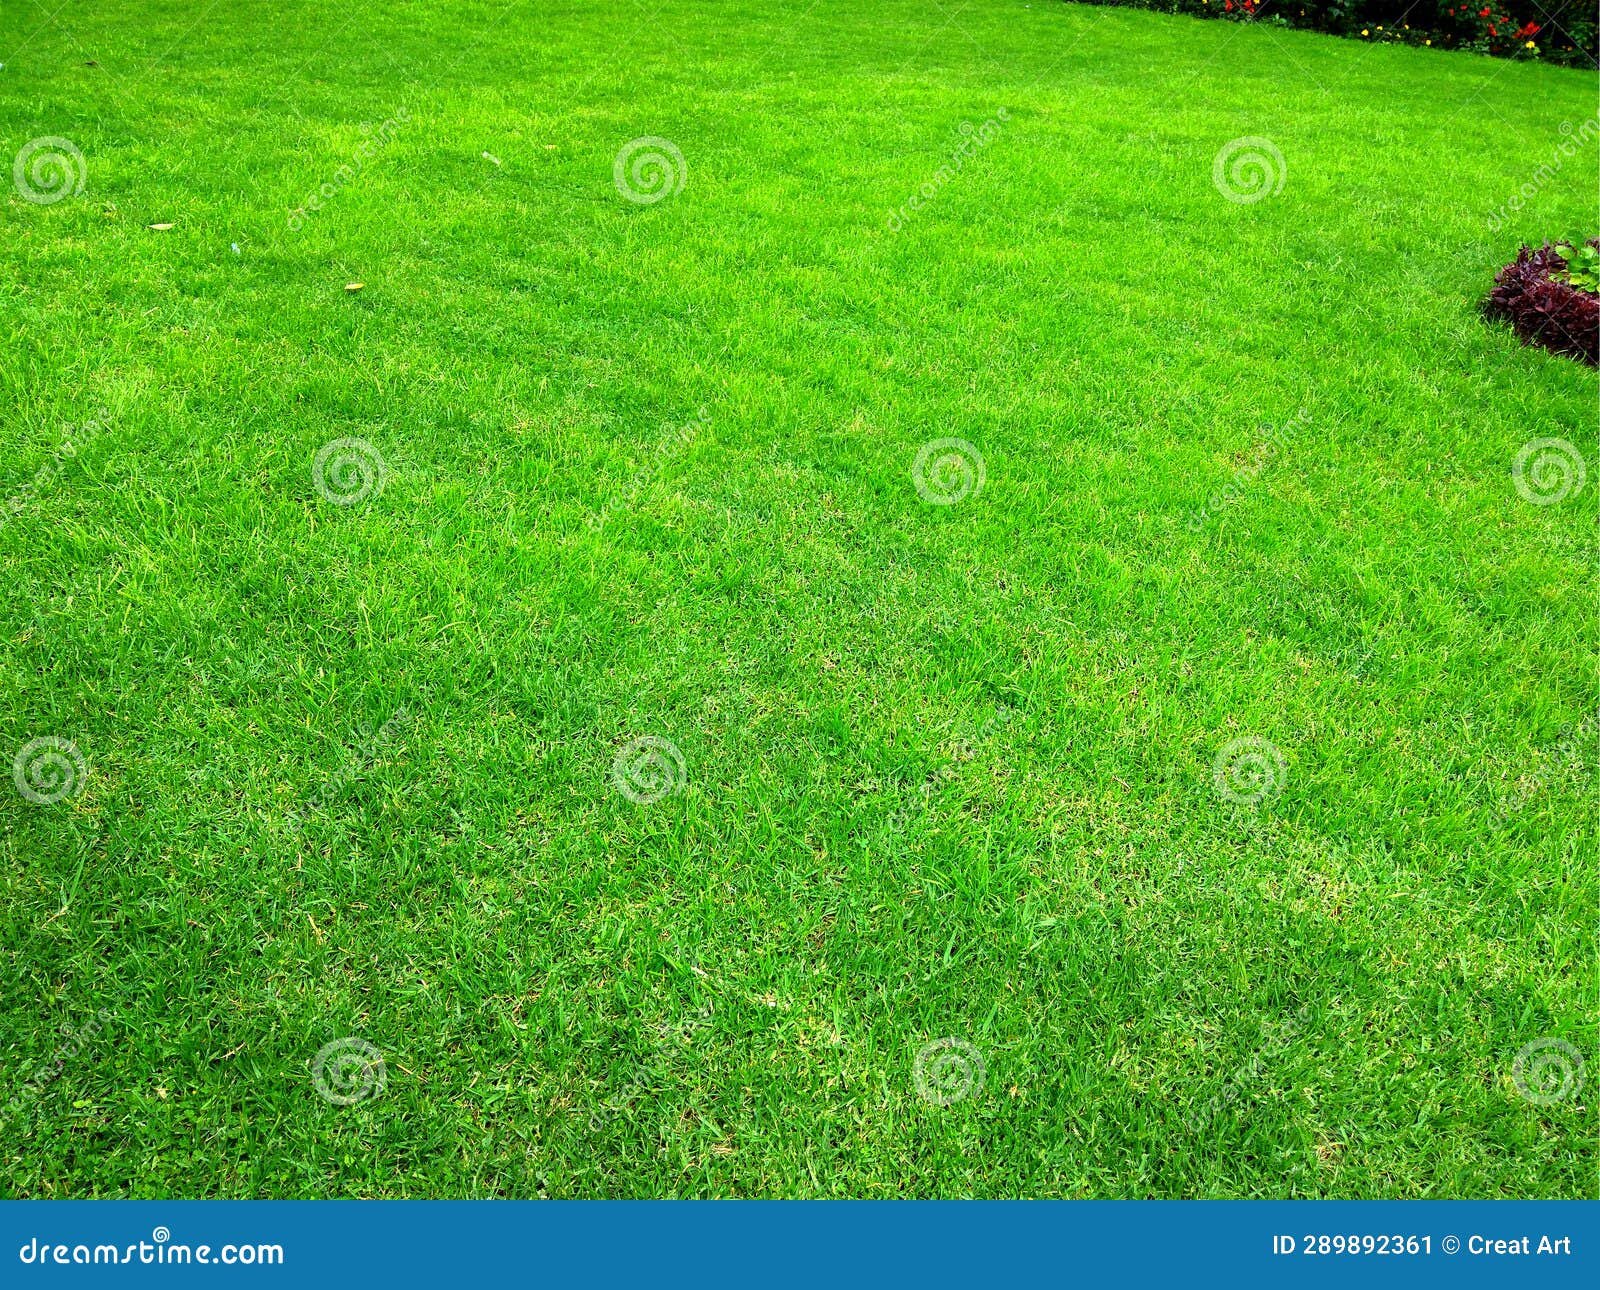 lawn-beutiful-green-grass